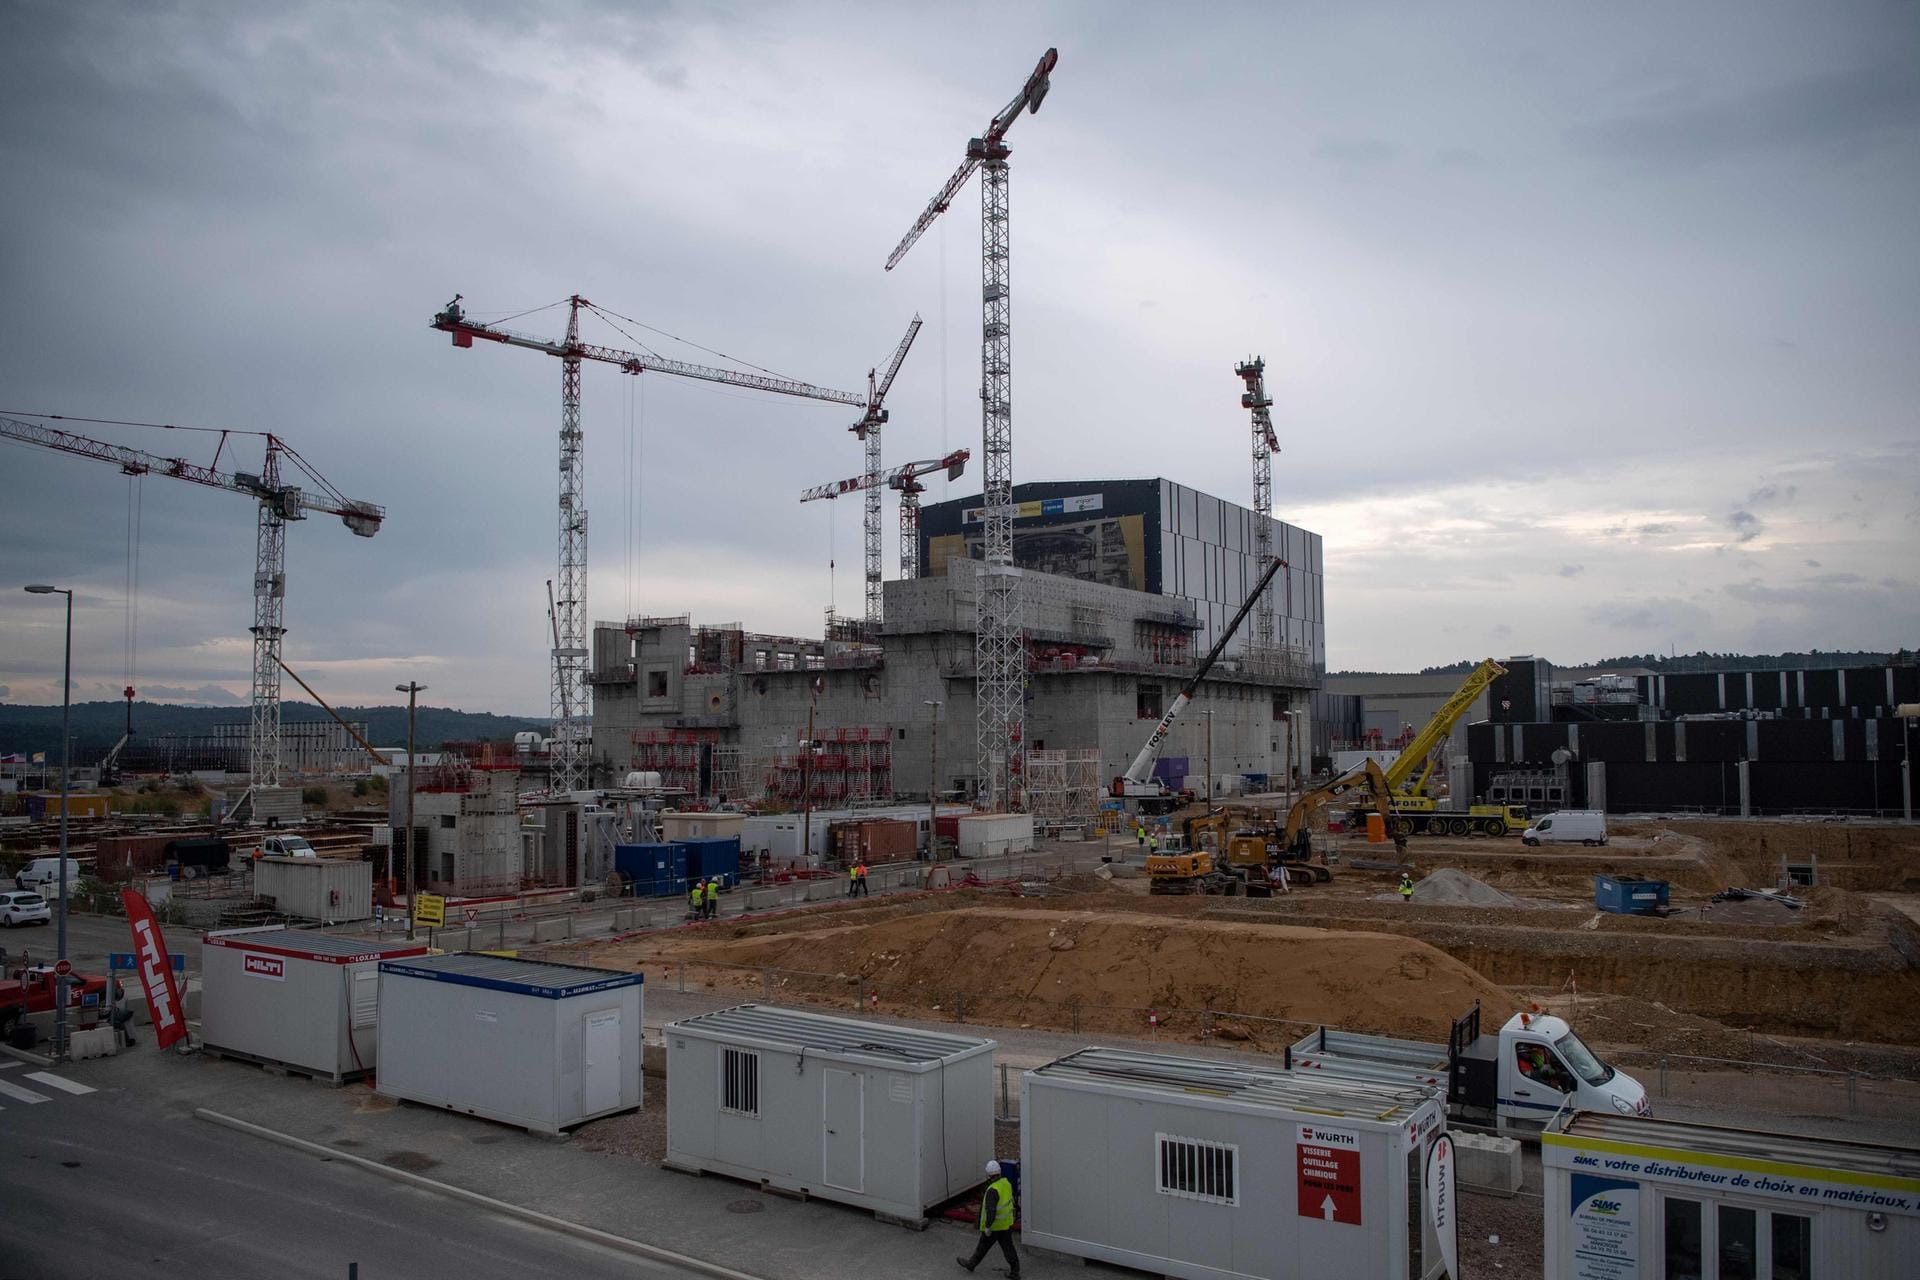 Blick auf die Baustelle des Kernfusionsreaktors Iter: Frankreich feiert einen wichtigen Bauabschnitt.